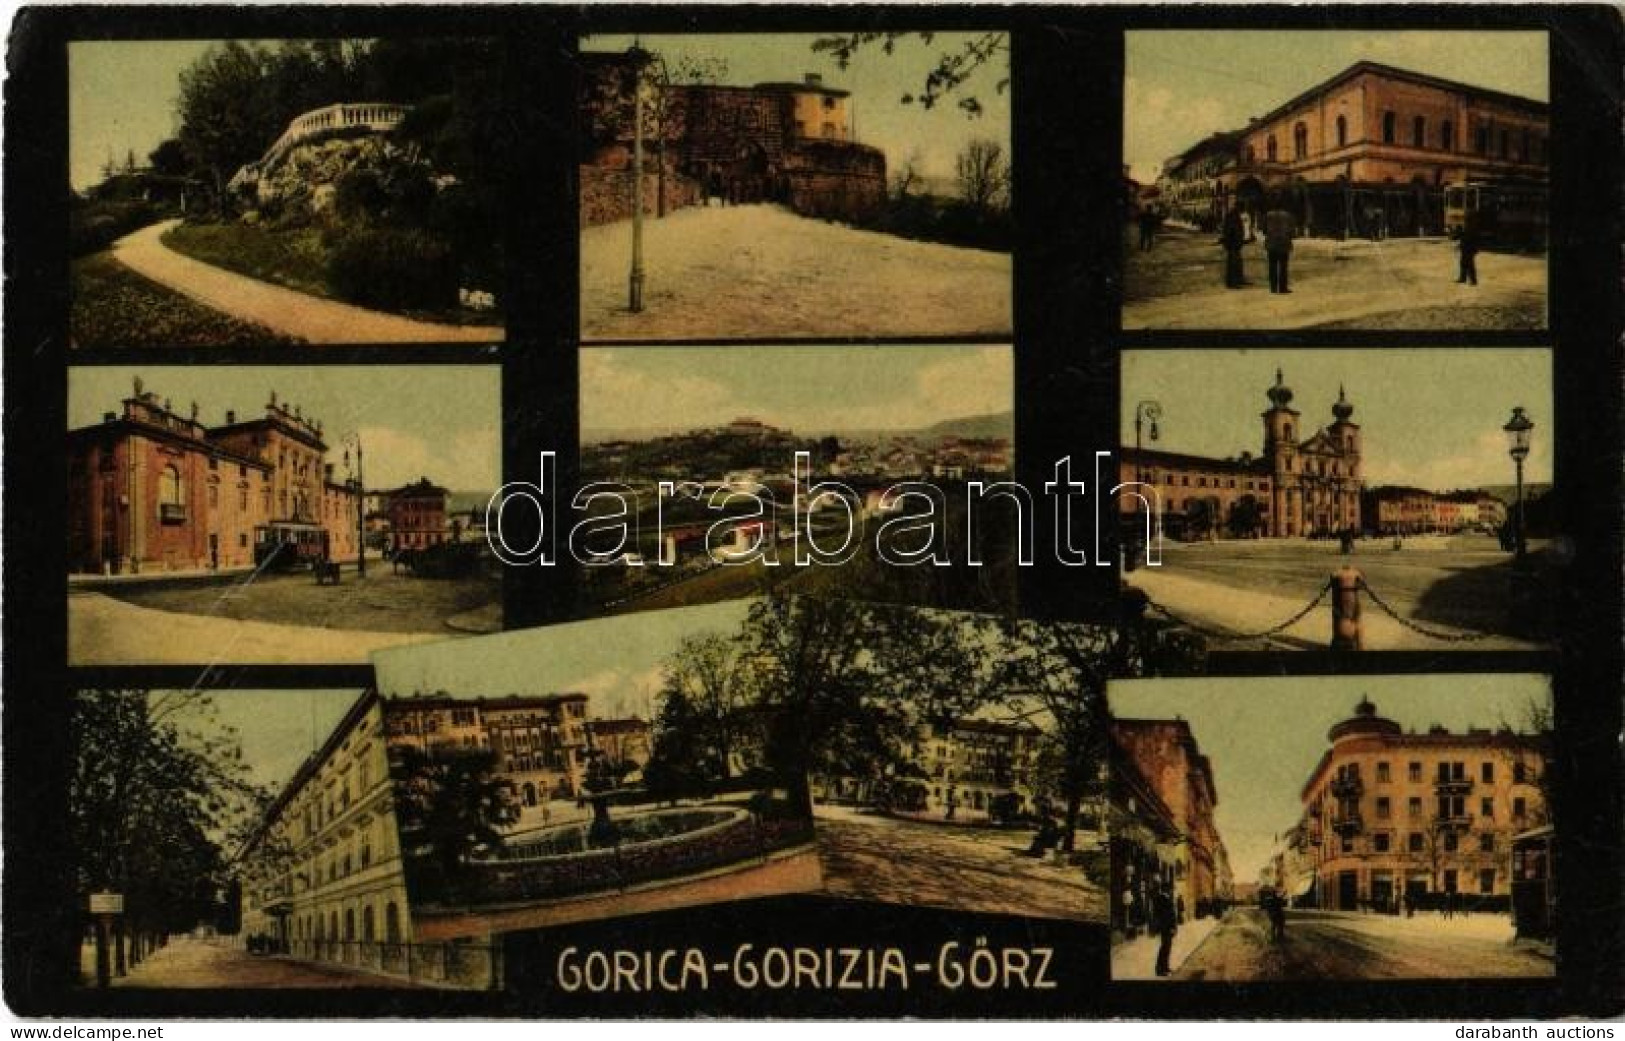 T2/T3 1915 Gorizia, Görz, Gorica; Multi-view Postcard, Street Views With Tram, Railway Station, Cathedral, Castle (EK) - Non Classés